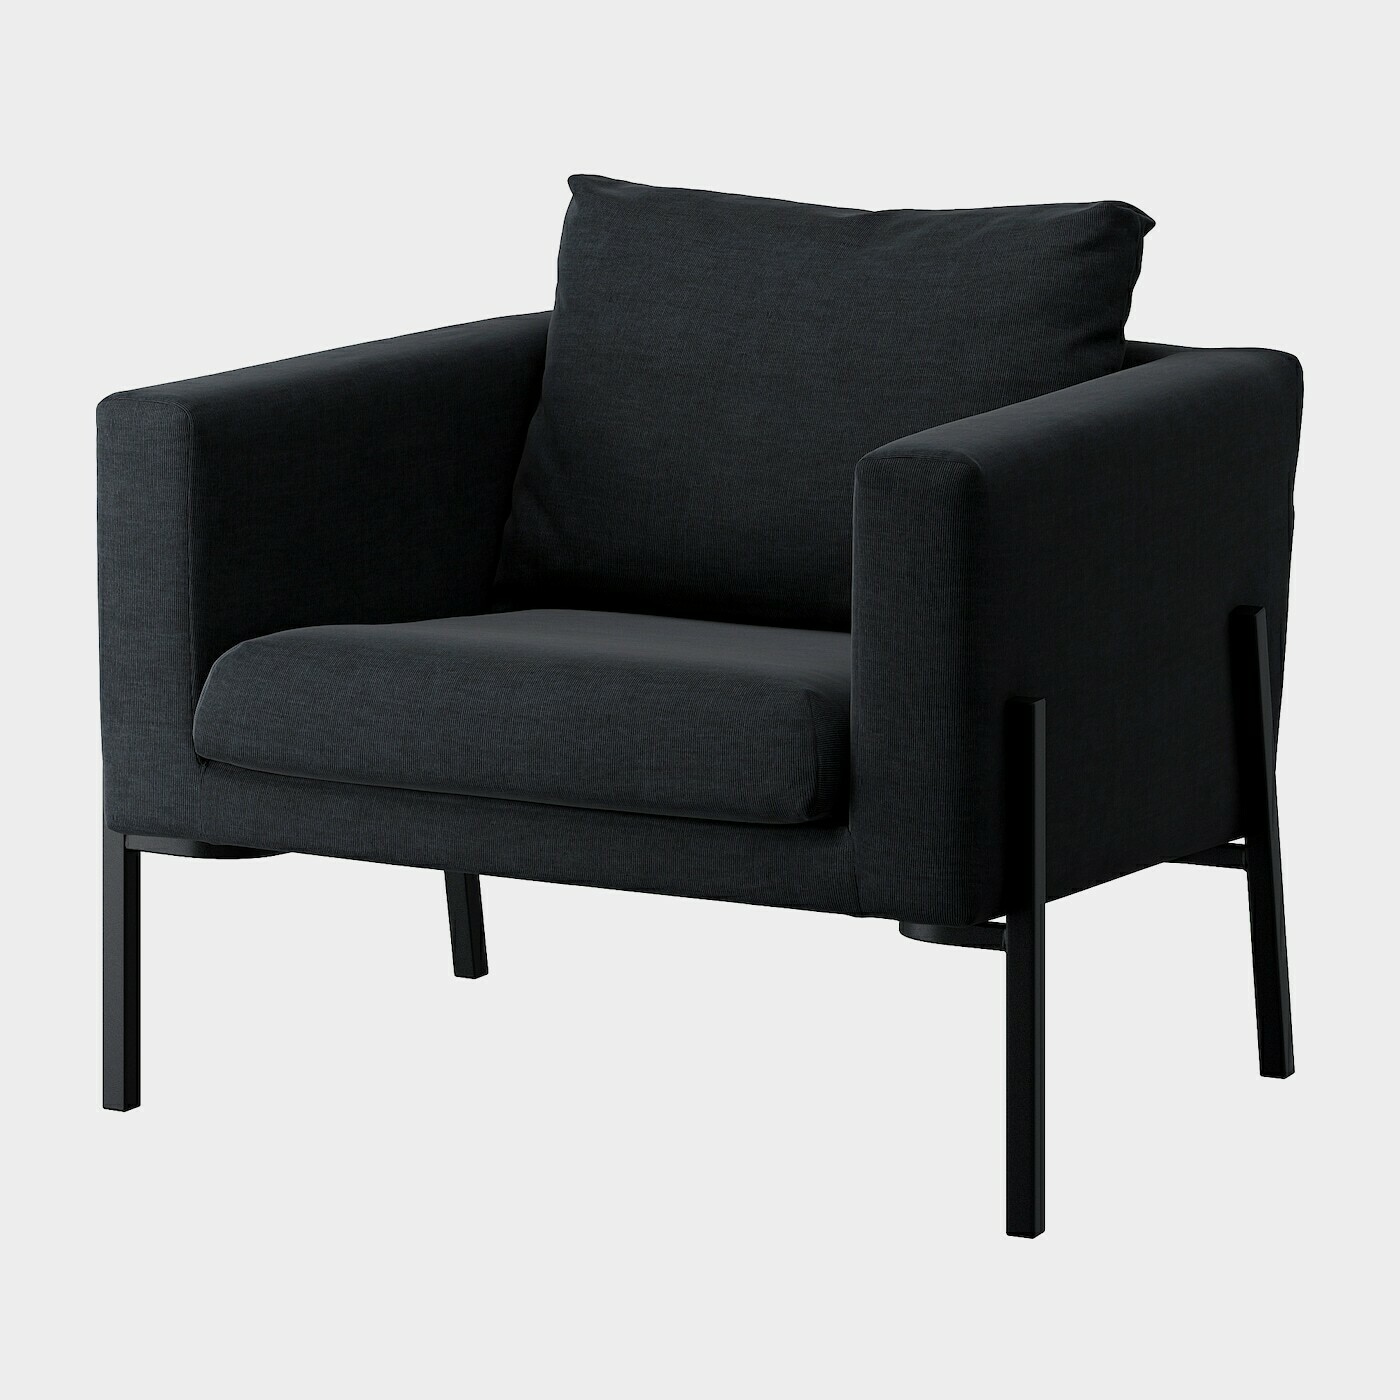 KOARP Bezug für Sessel  -  - Möbel Ideen für dein Zuhause von Home Trends. Möbel Trends von Social Media Influencer für dein Skandi Zuhause.